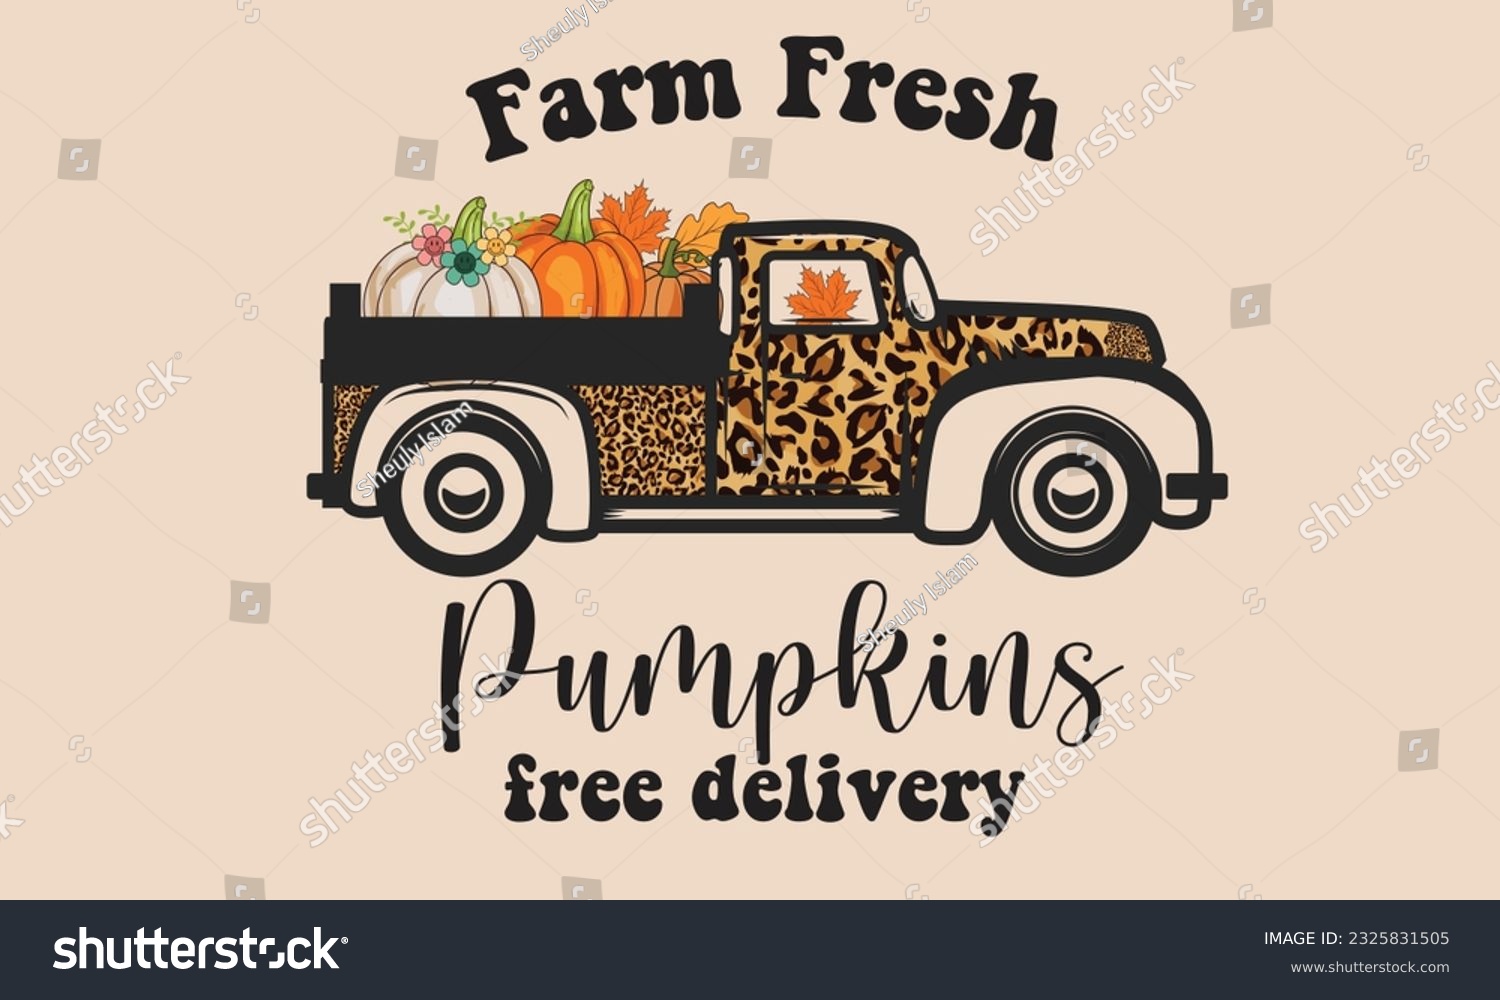 SVG of Farm Fresh Pumpkins Free Delivery Sublimation T-Shirt Design svg